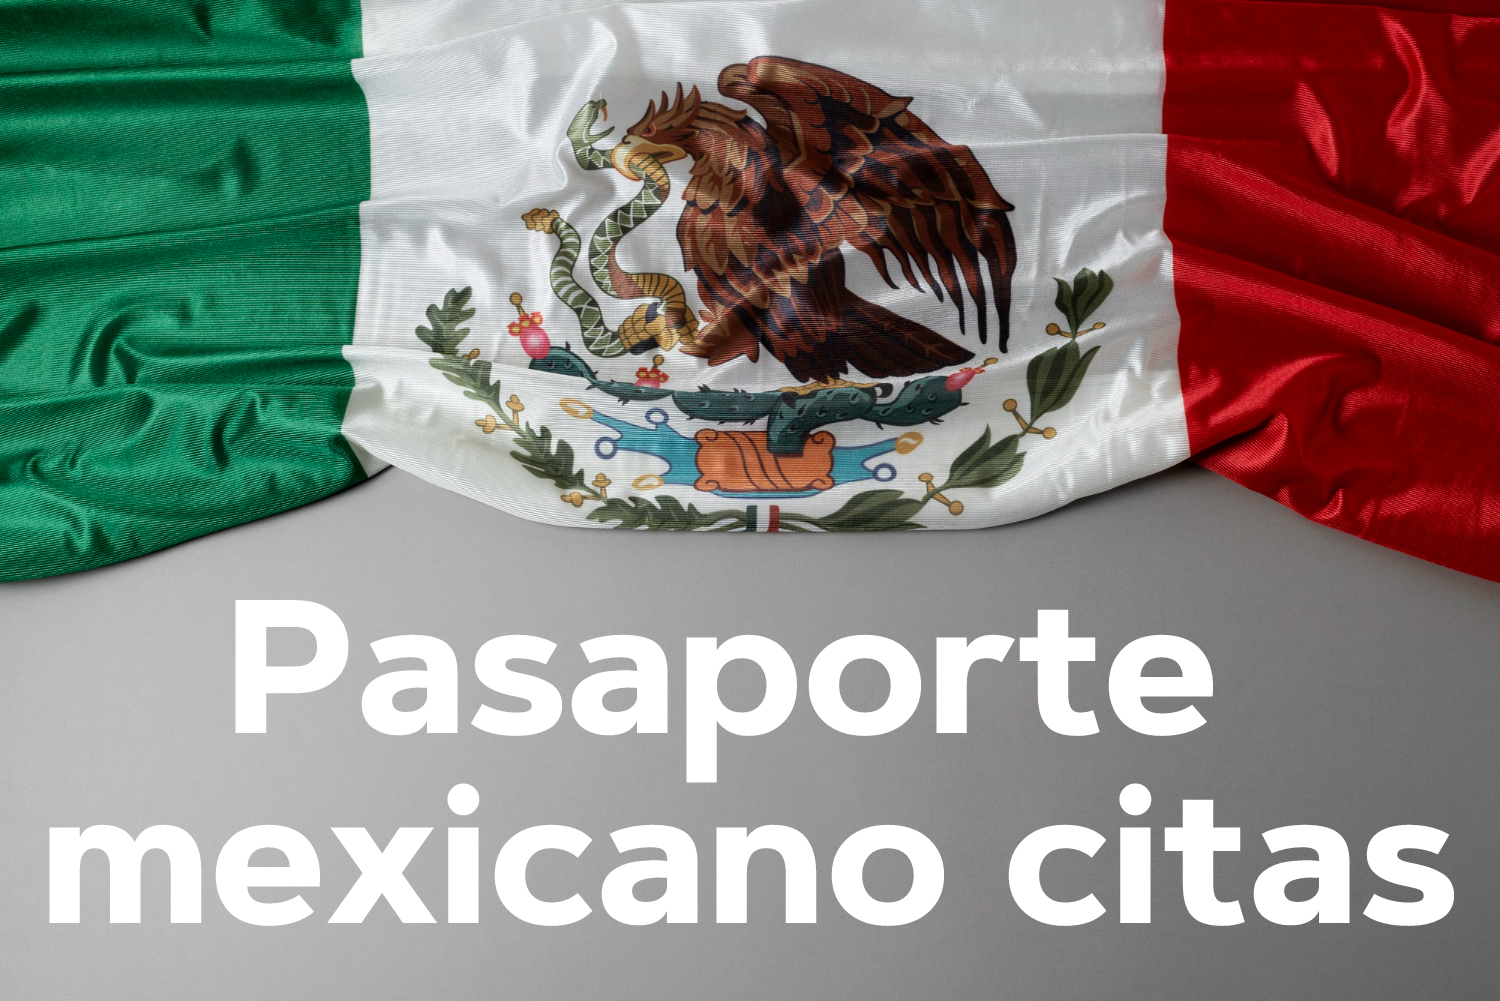 Pasaporte mexicano citas